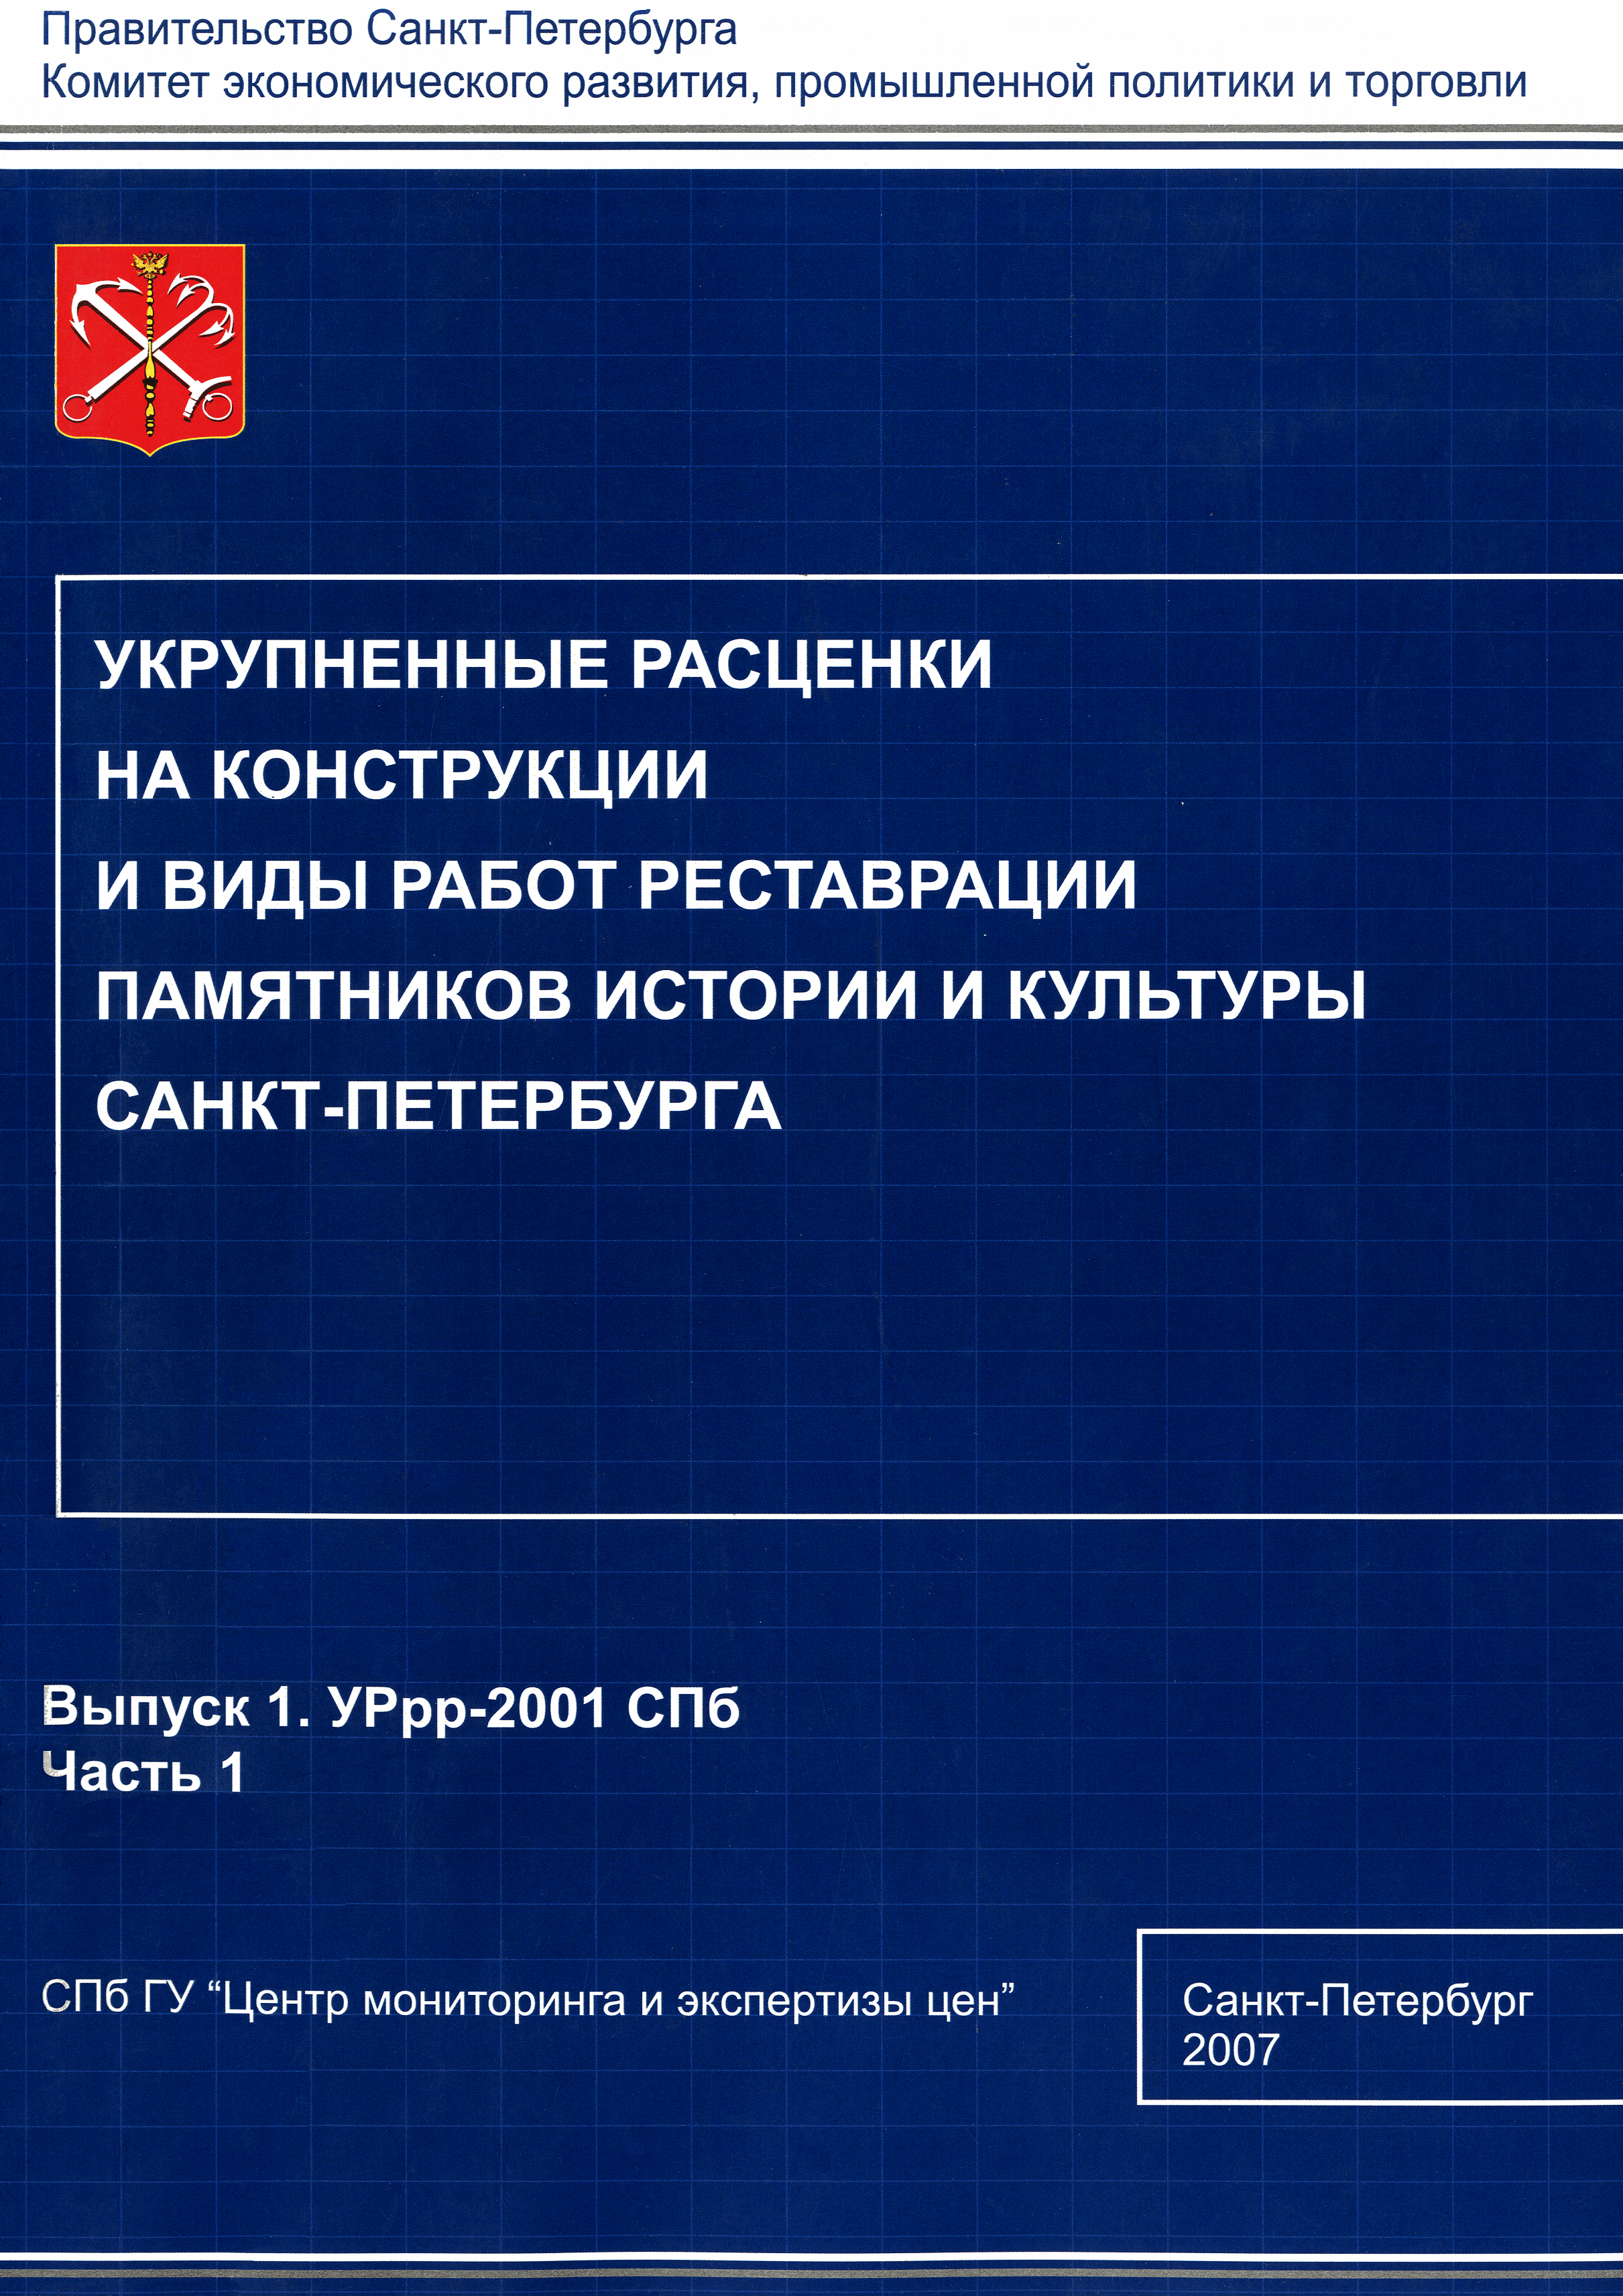 УРрр 2001-СПб